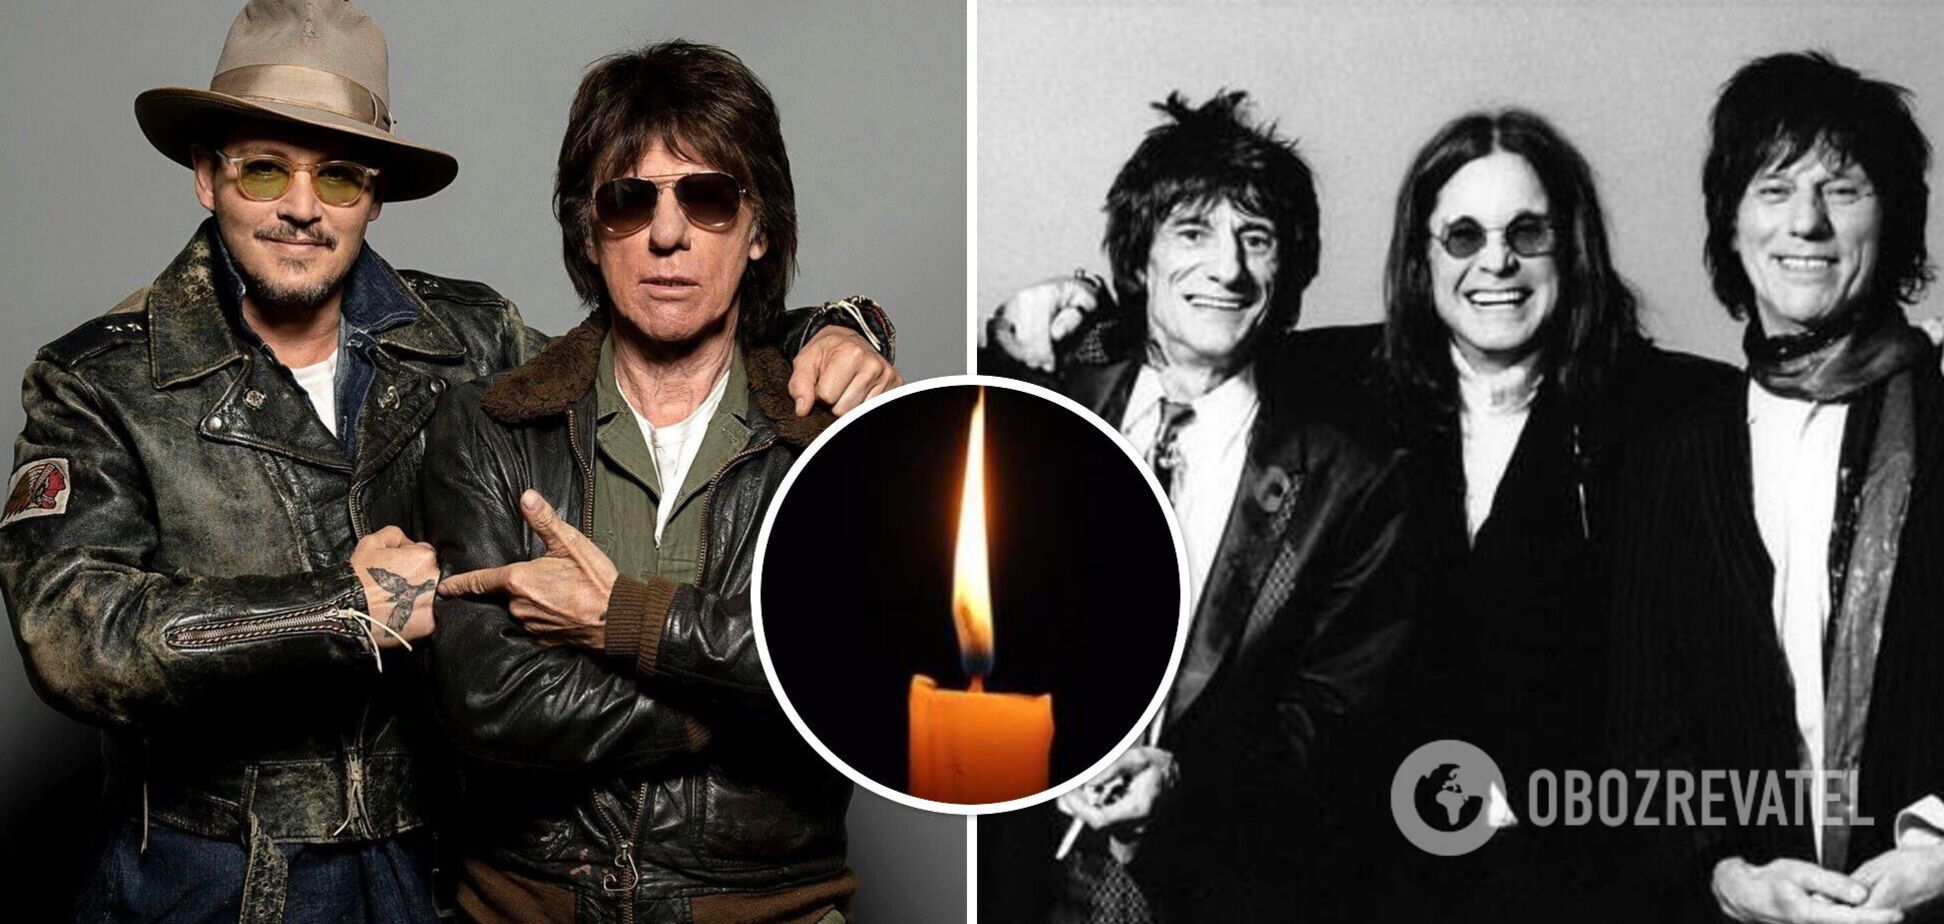 Умер легендарный рок-гитарист Джефф Бек: Оззи Осборн, Джонни Депп и Мик Джаггер оплакивают потерю